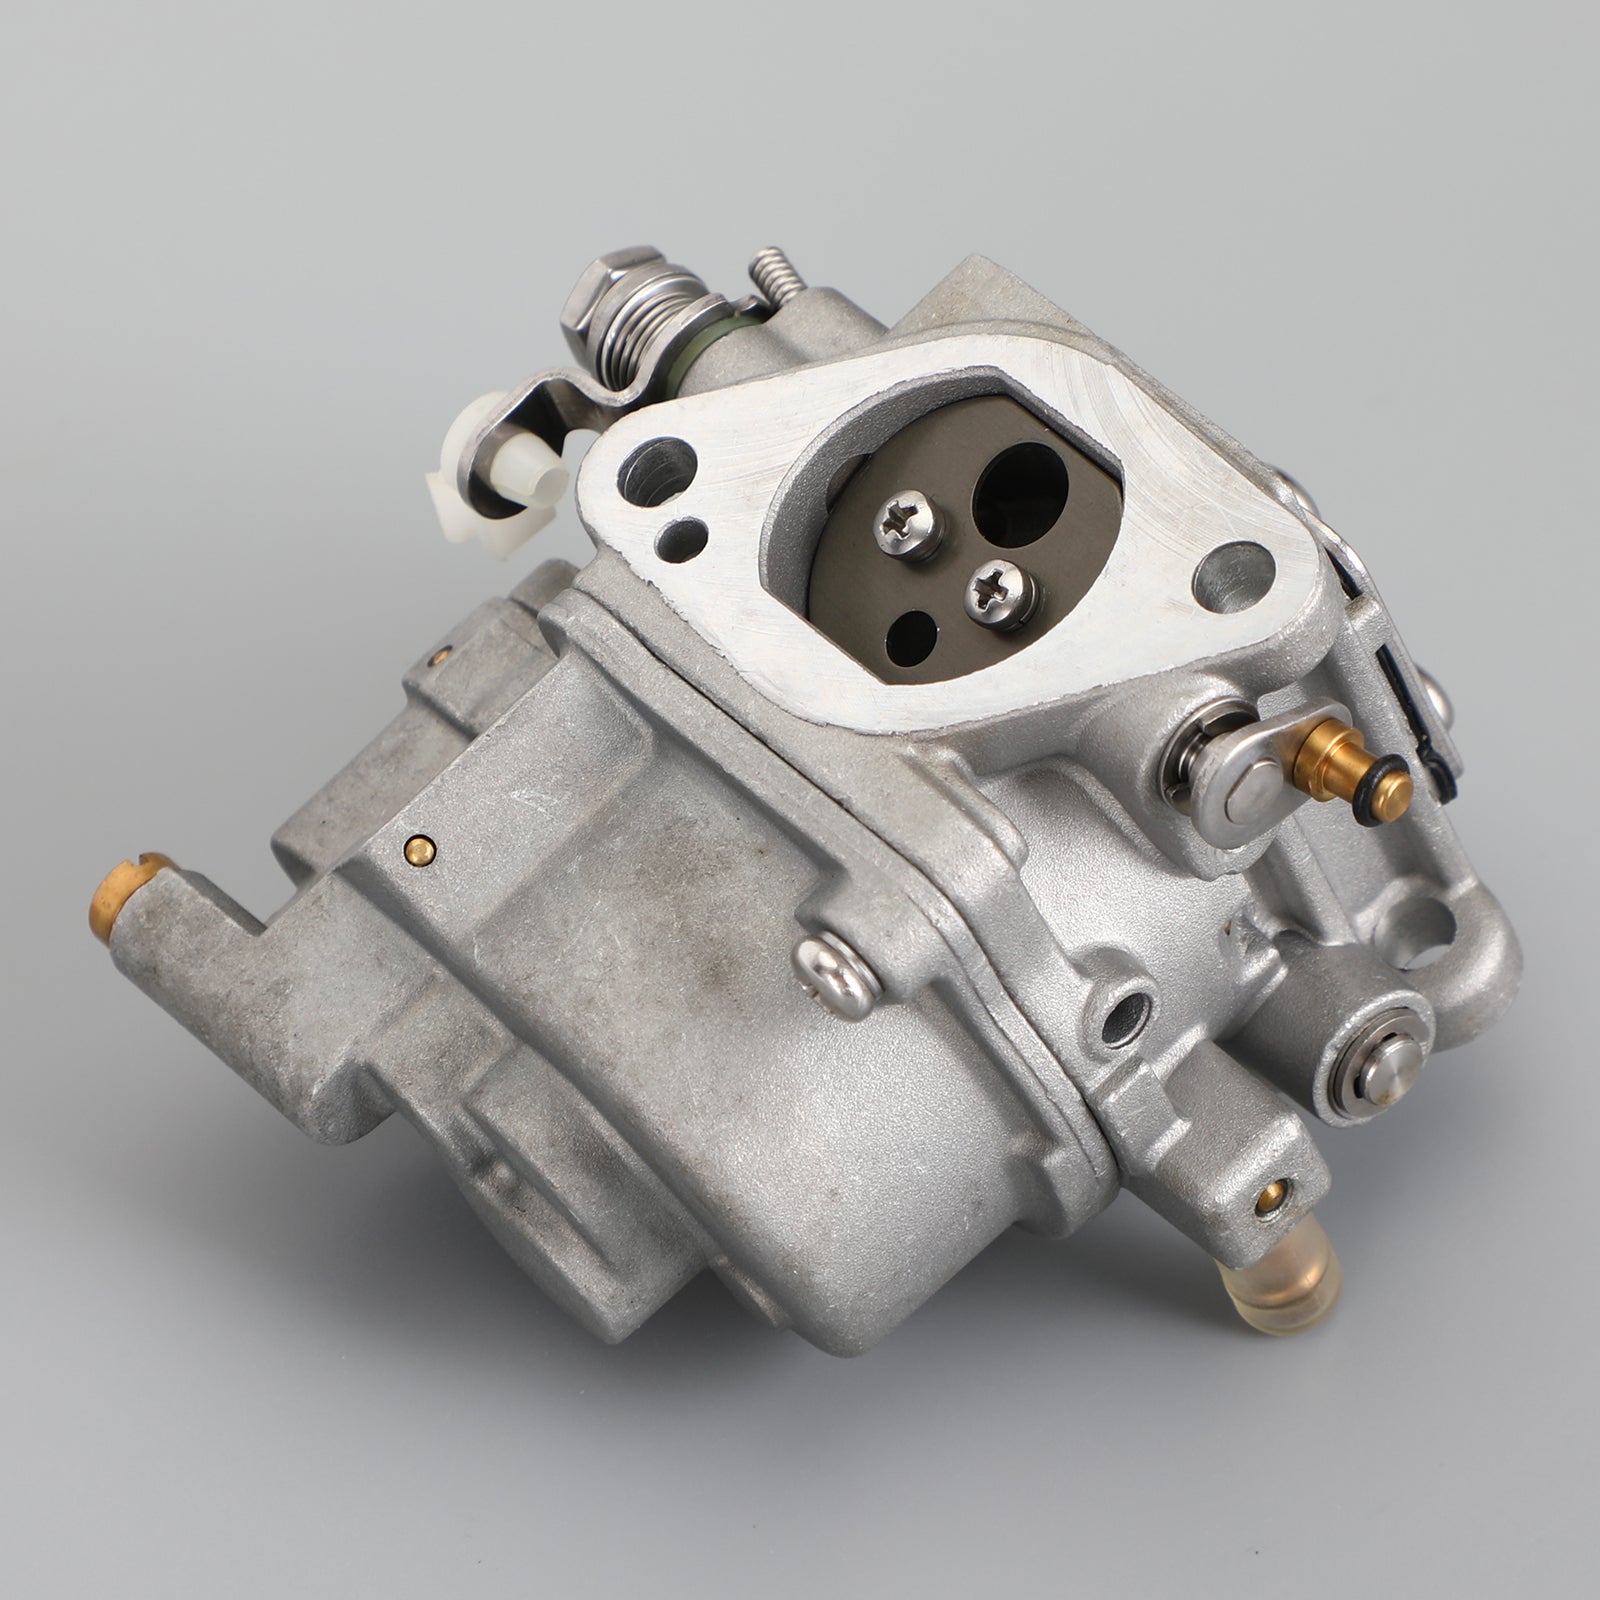 Motor fueraborda Yamaha Hidea F 9,9 Hp 4T 6AU-14301-40 41 para carburador